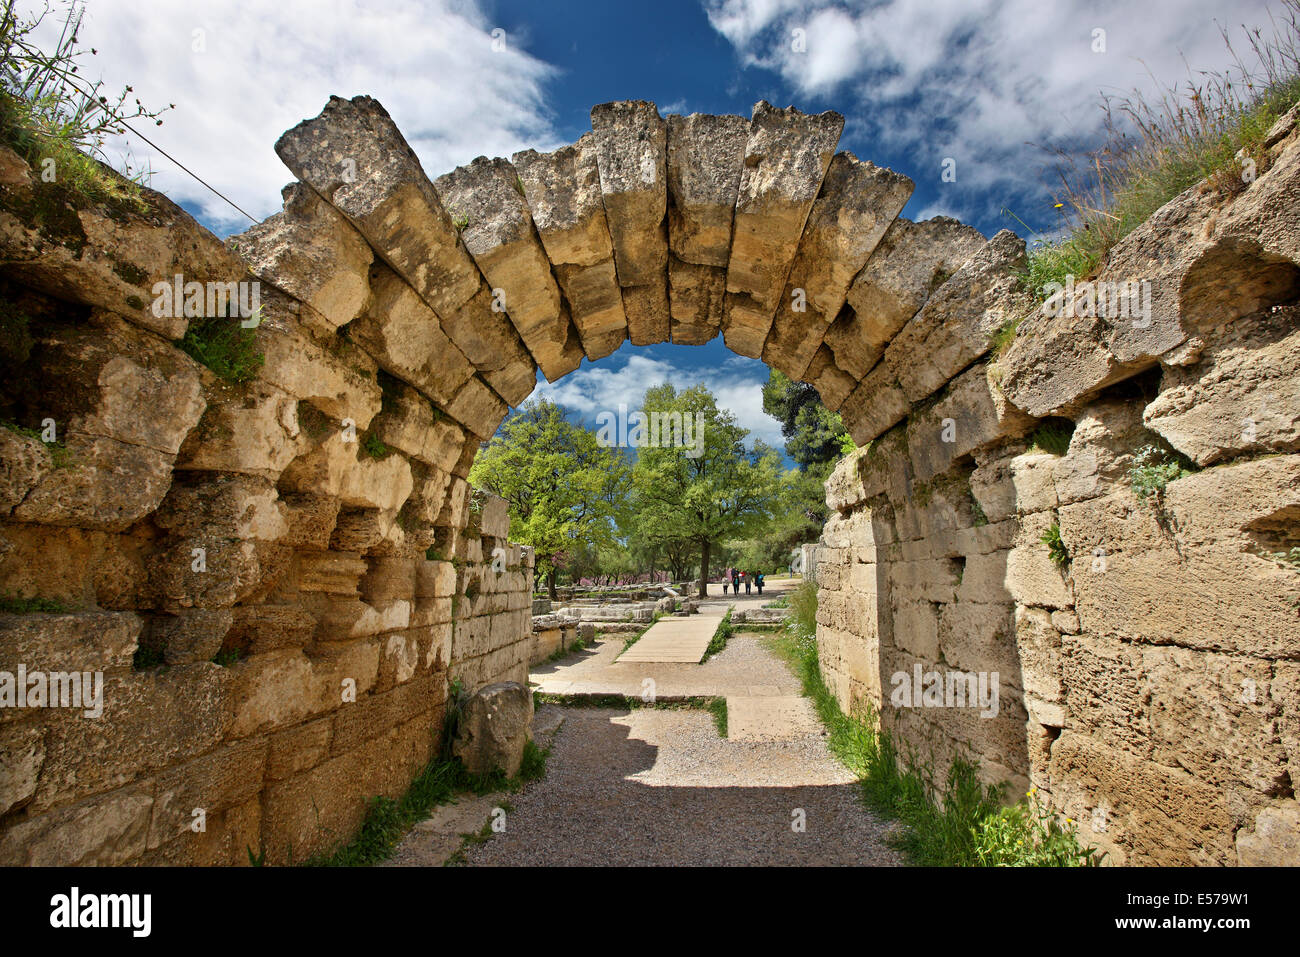 La "cripta", la entrada al estadio de la antigua Olimpia, cuna de los Juegos Olímpicos, Ilia, Peloponeso, Grecia. Foto de stock